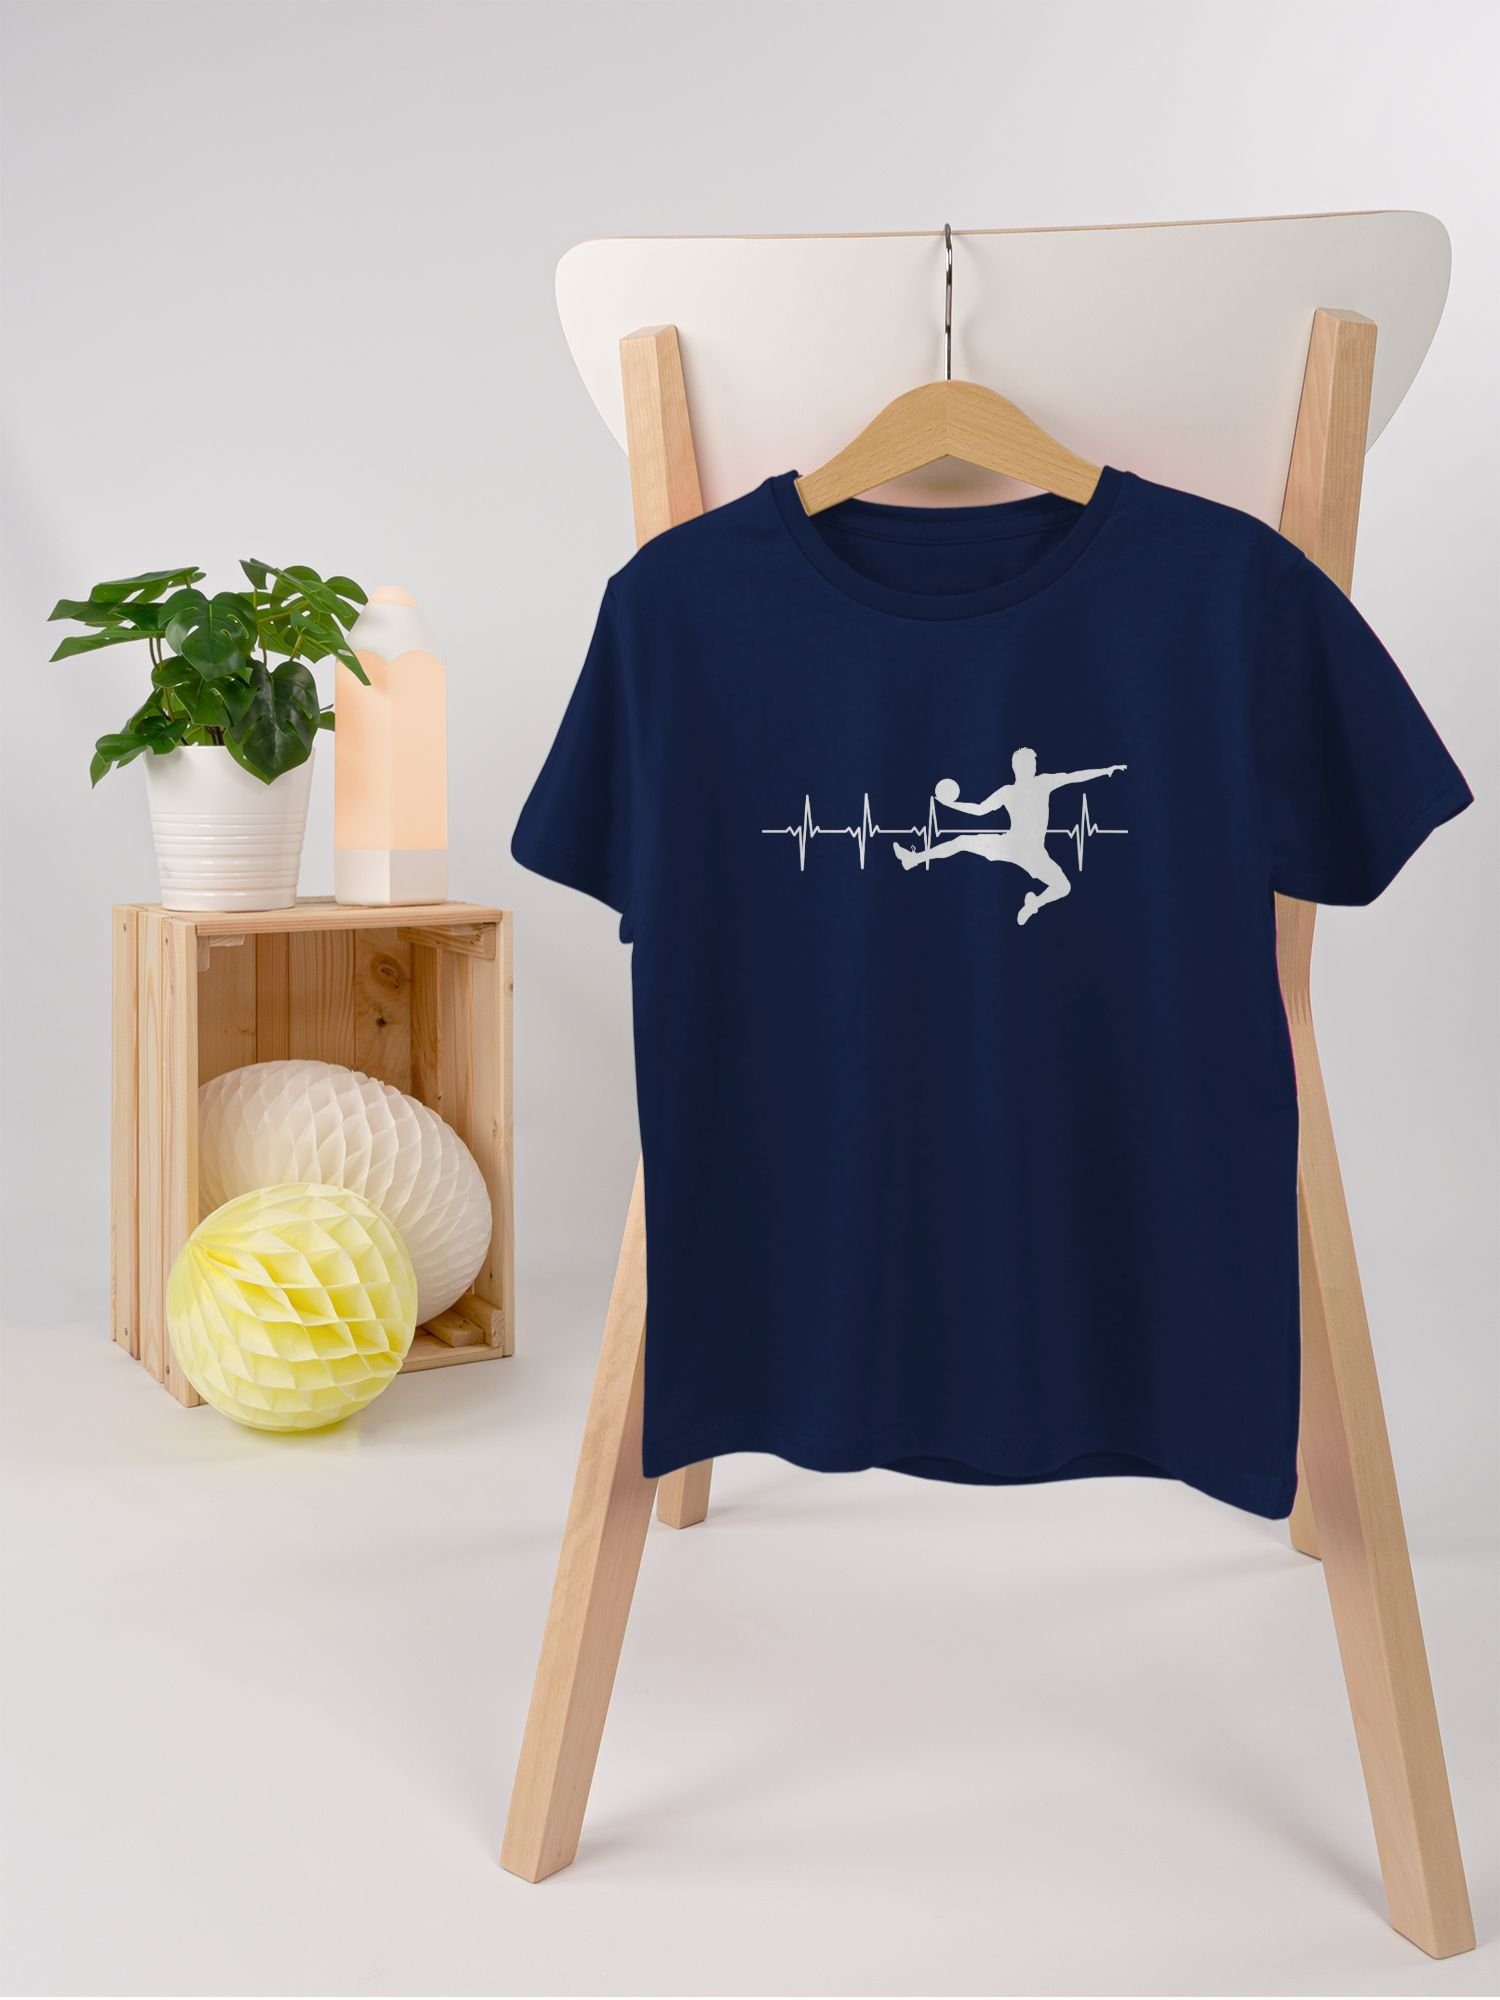 Shirtracer T-Shirt Handball Herren Kleidung Herzschlag Kinder Sport Dunkelblau 1 für